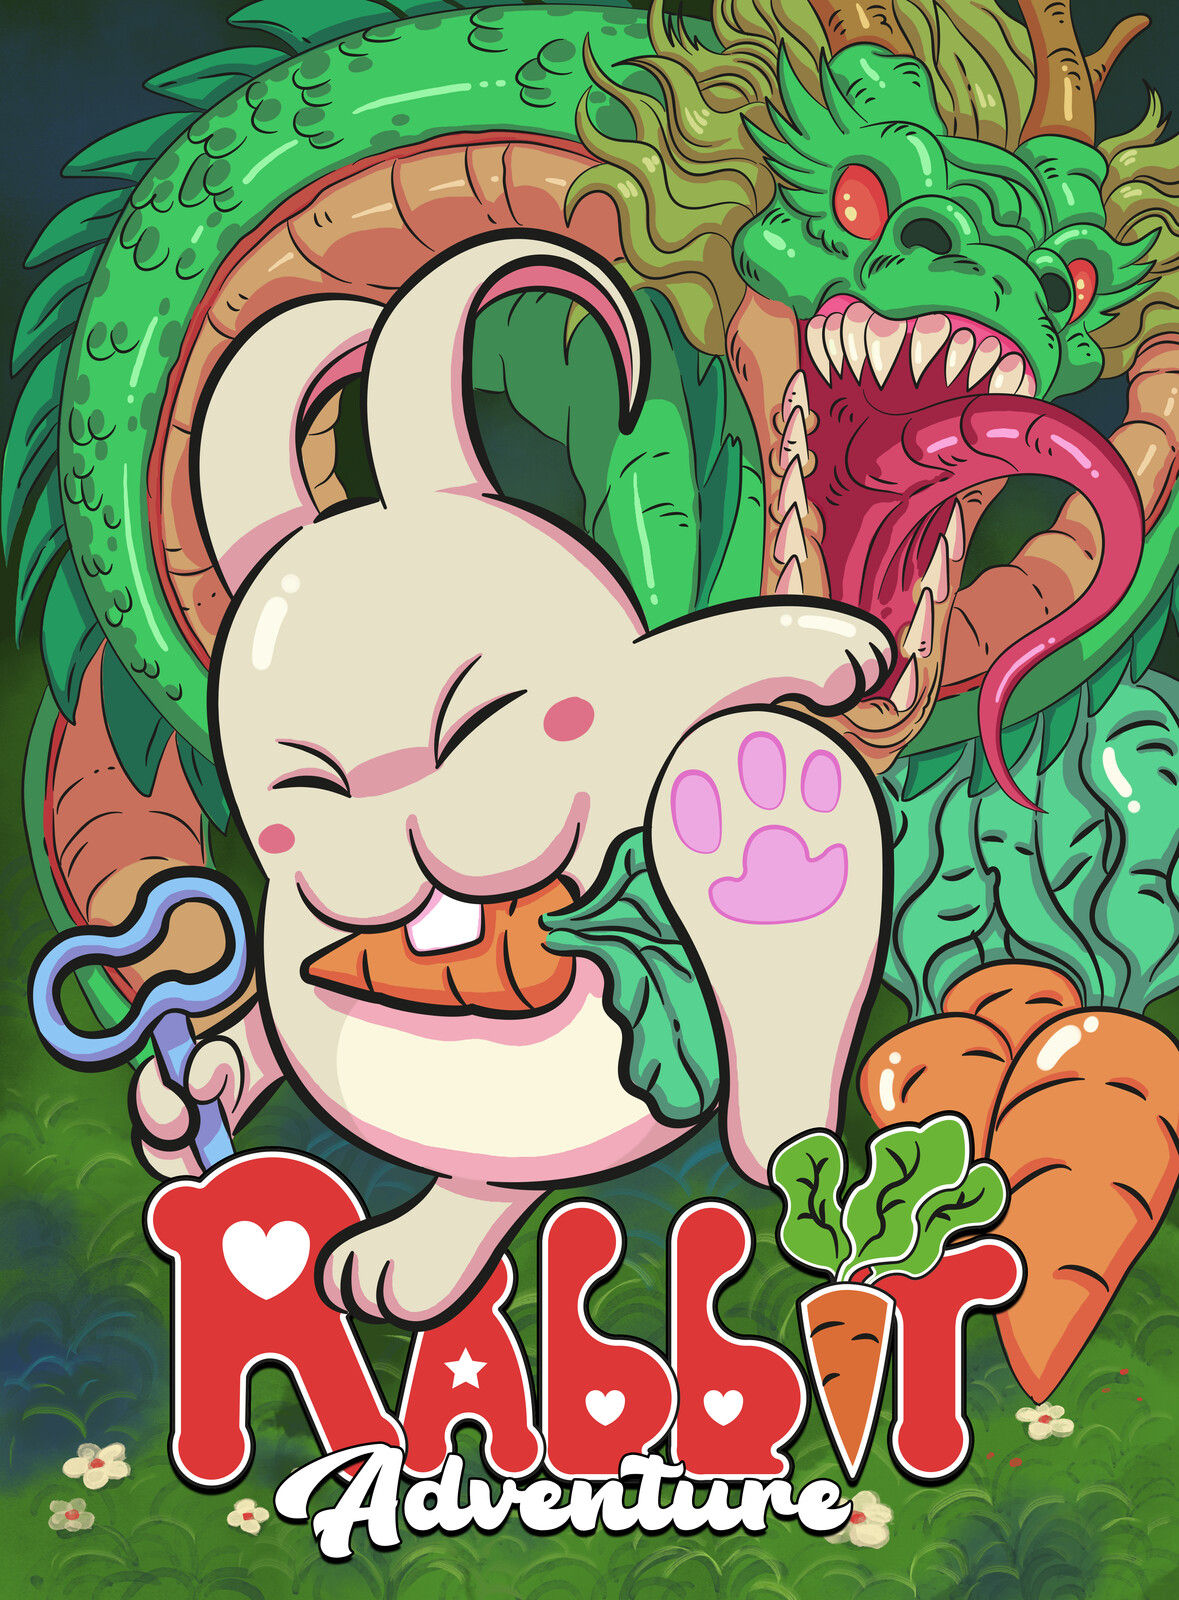 Rabbit Adventure retro game cover